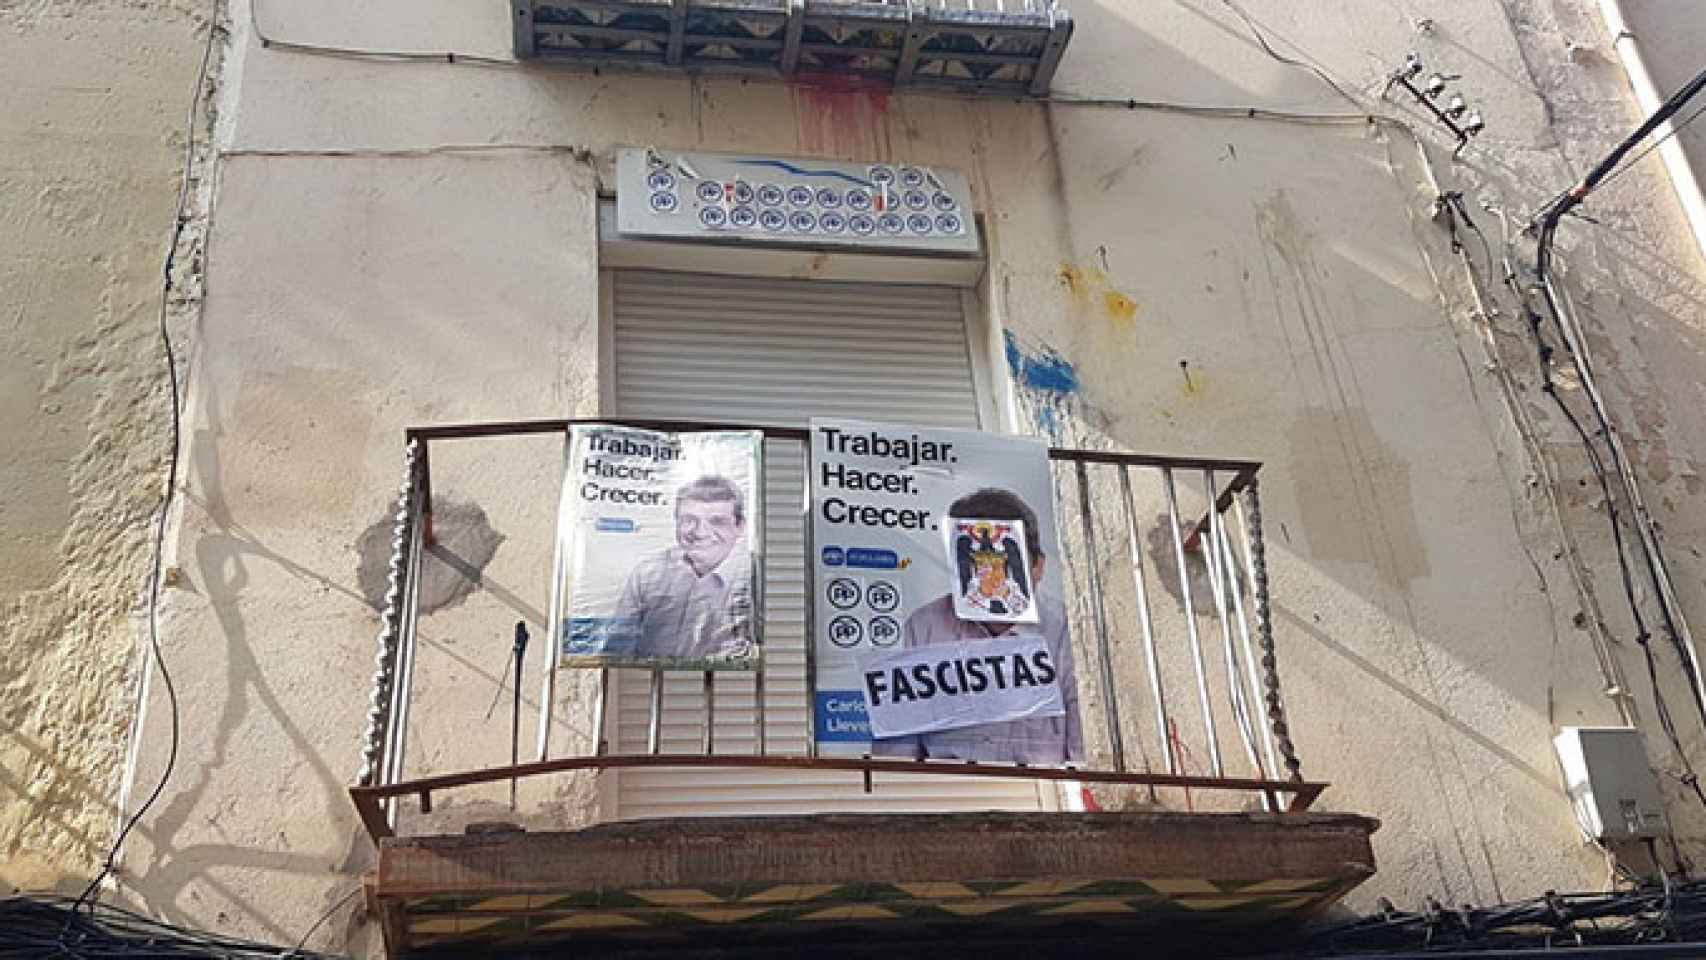 Carteles con la palabra Fascistas y manchas de pintura en la sede del PP de Esparraguera (Barcelona) / CG